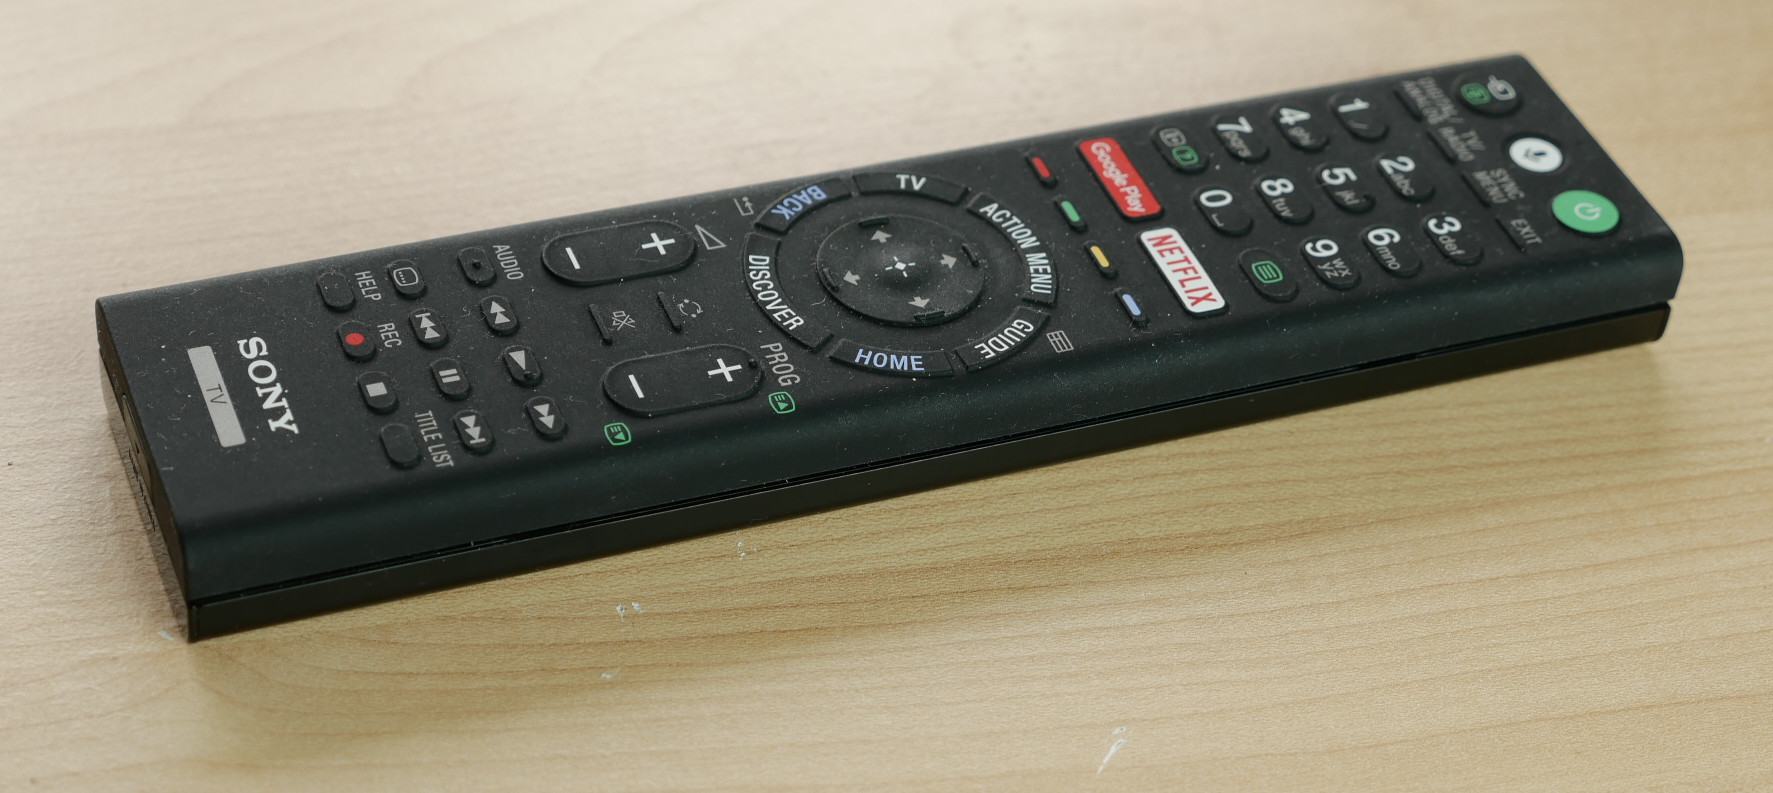 Cách cài đặt Smart Tivi Sony bắt đầu bằng nút Home trên Remote